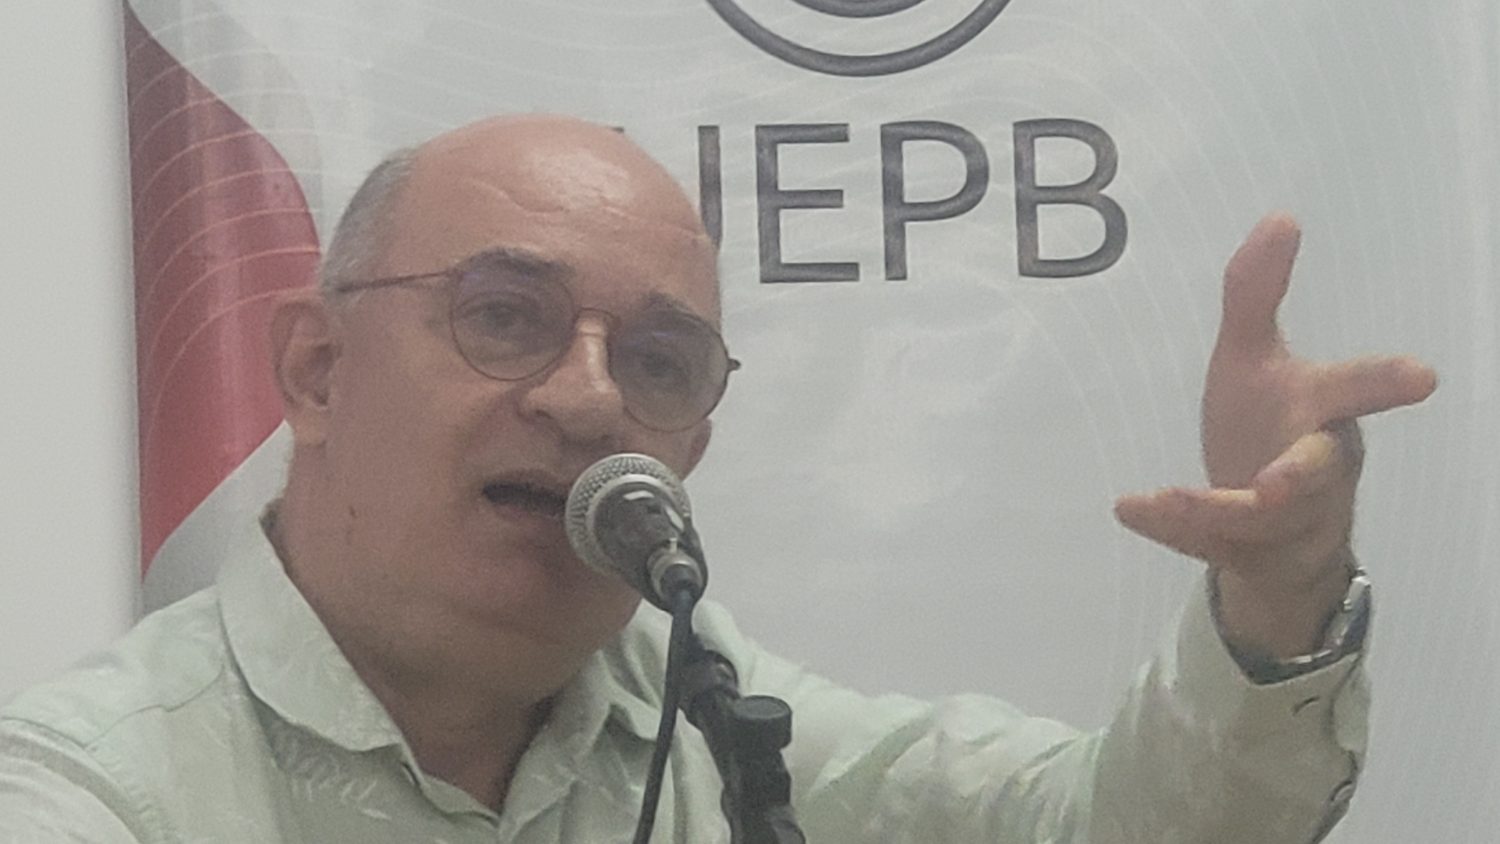 Durval Muniz lota auditório na UEPB e interpreta as angústias do neoliberalismo: “A ideia de que você consegue tudo sozinho é mentira”